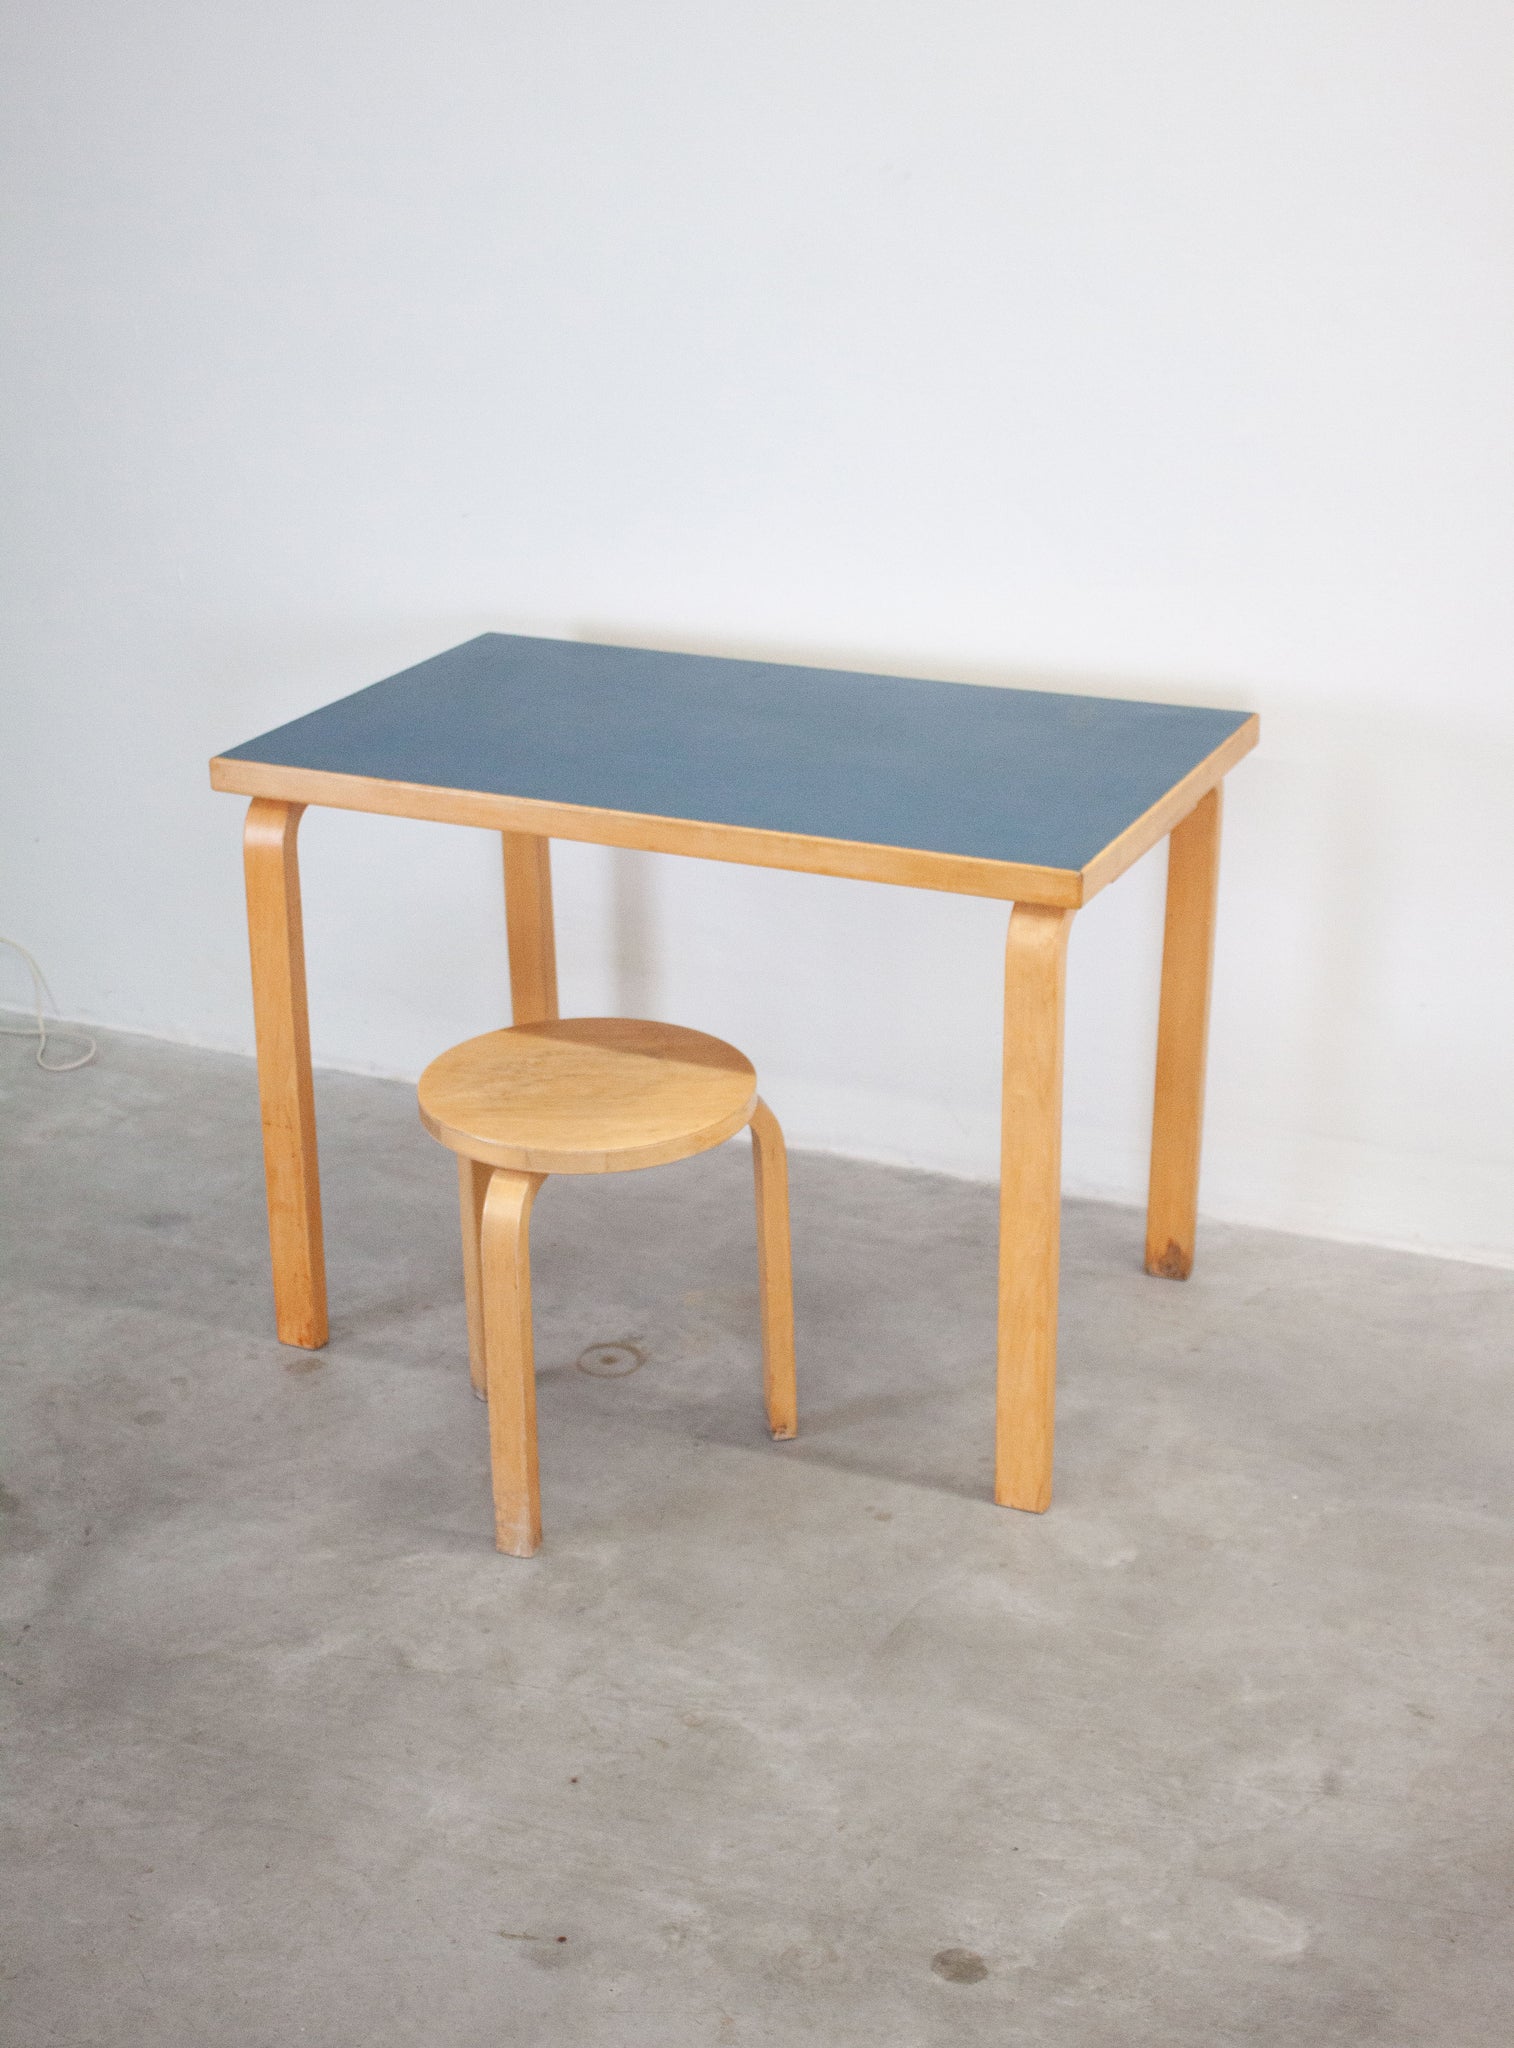 Artek Model 81 Table or Desk by Alvar Aalto